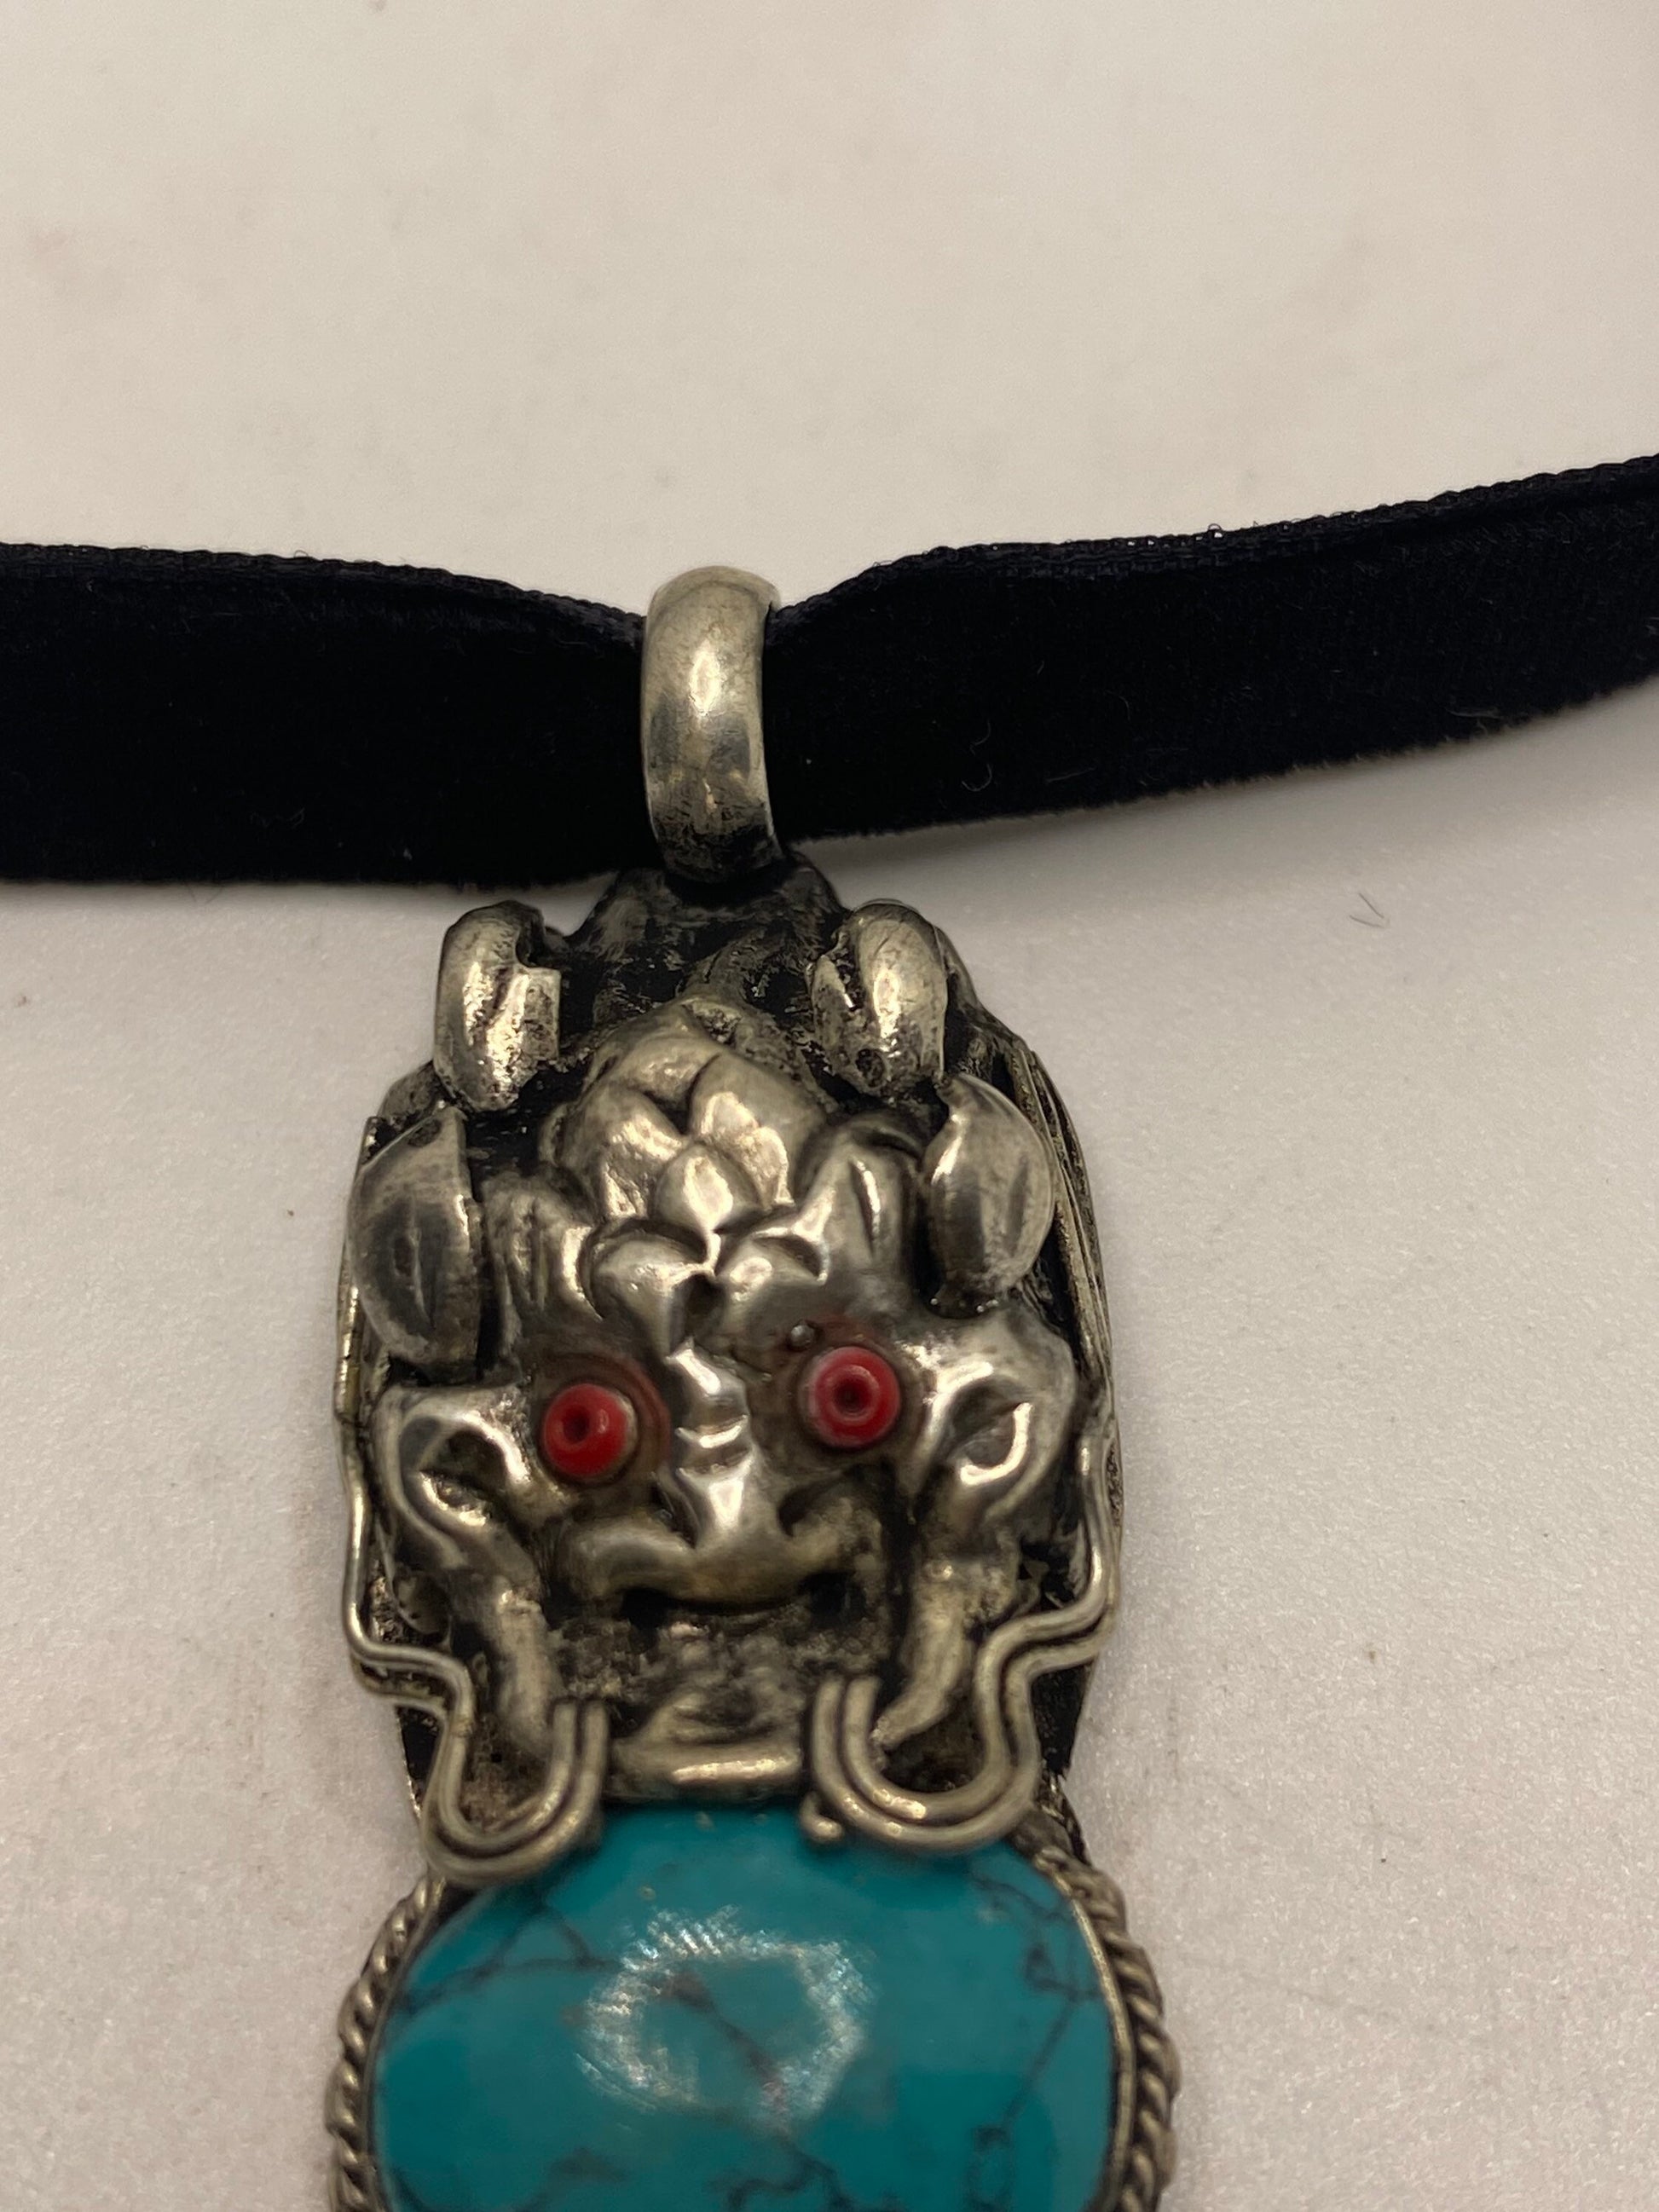 Vintage Tibetan Turquoise Dragon Black Velvet Choker Necklace.